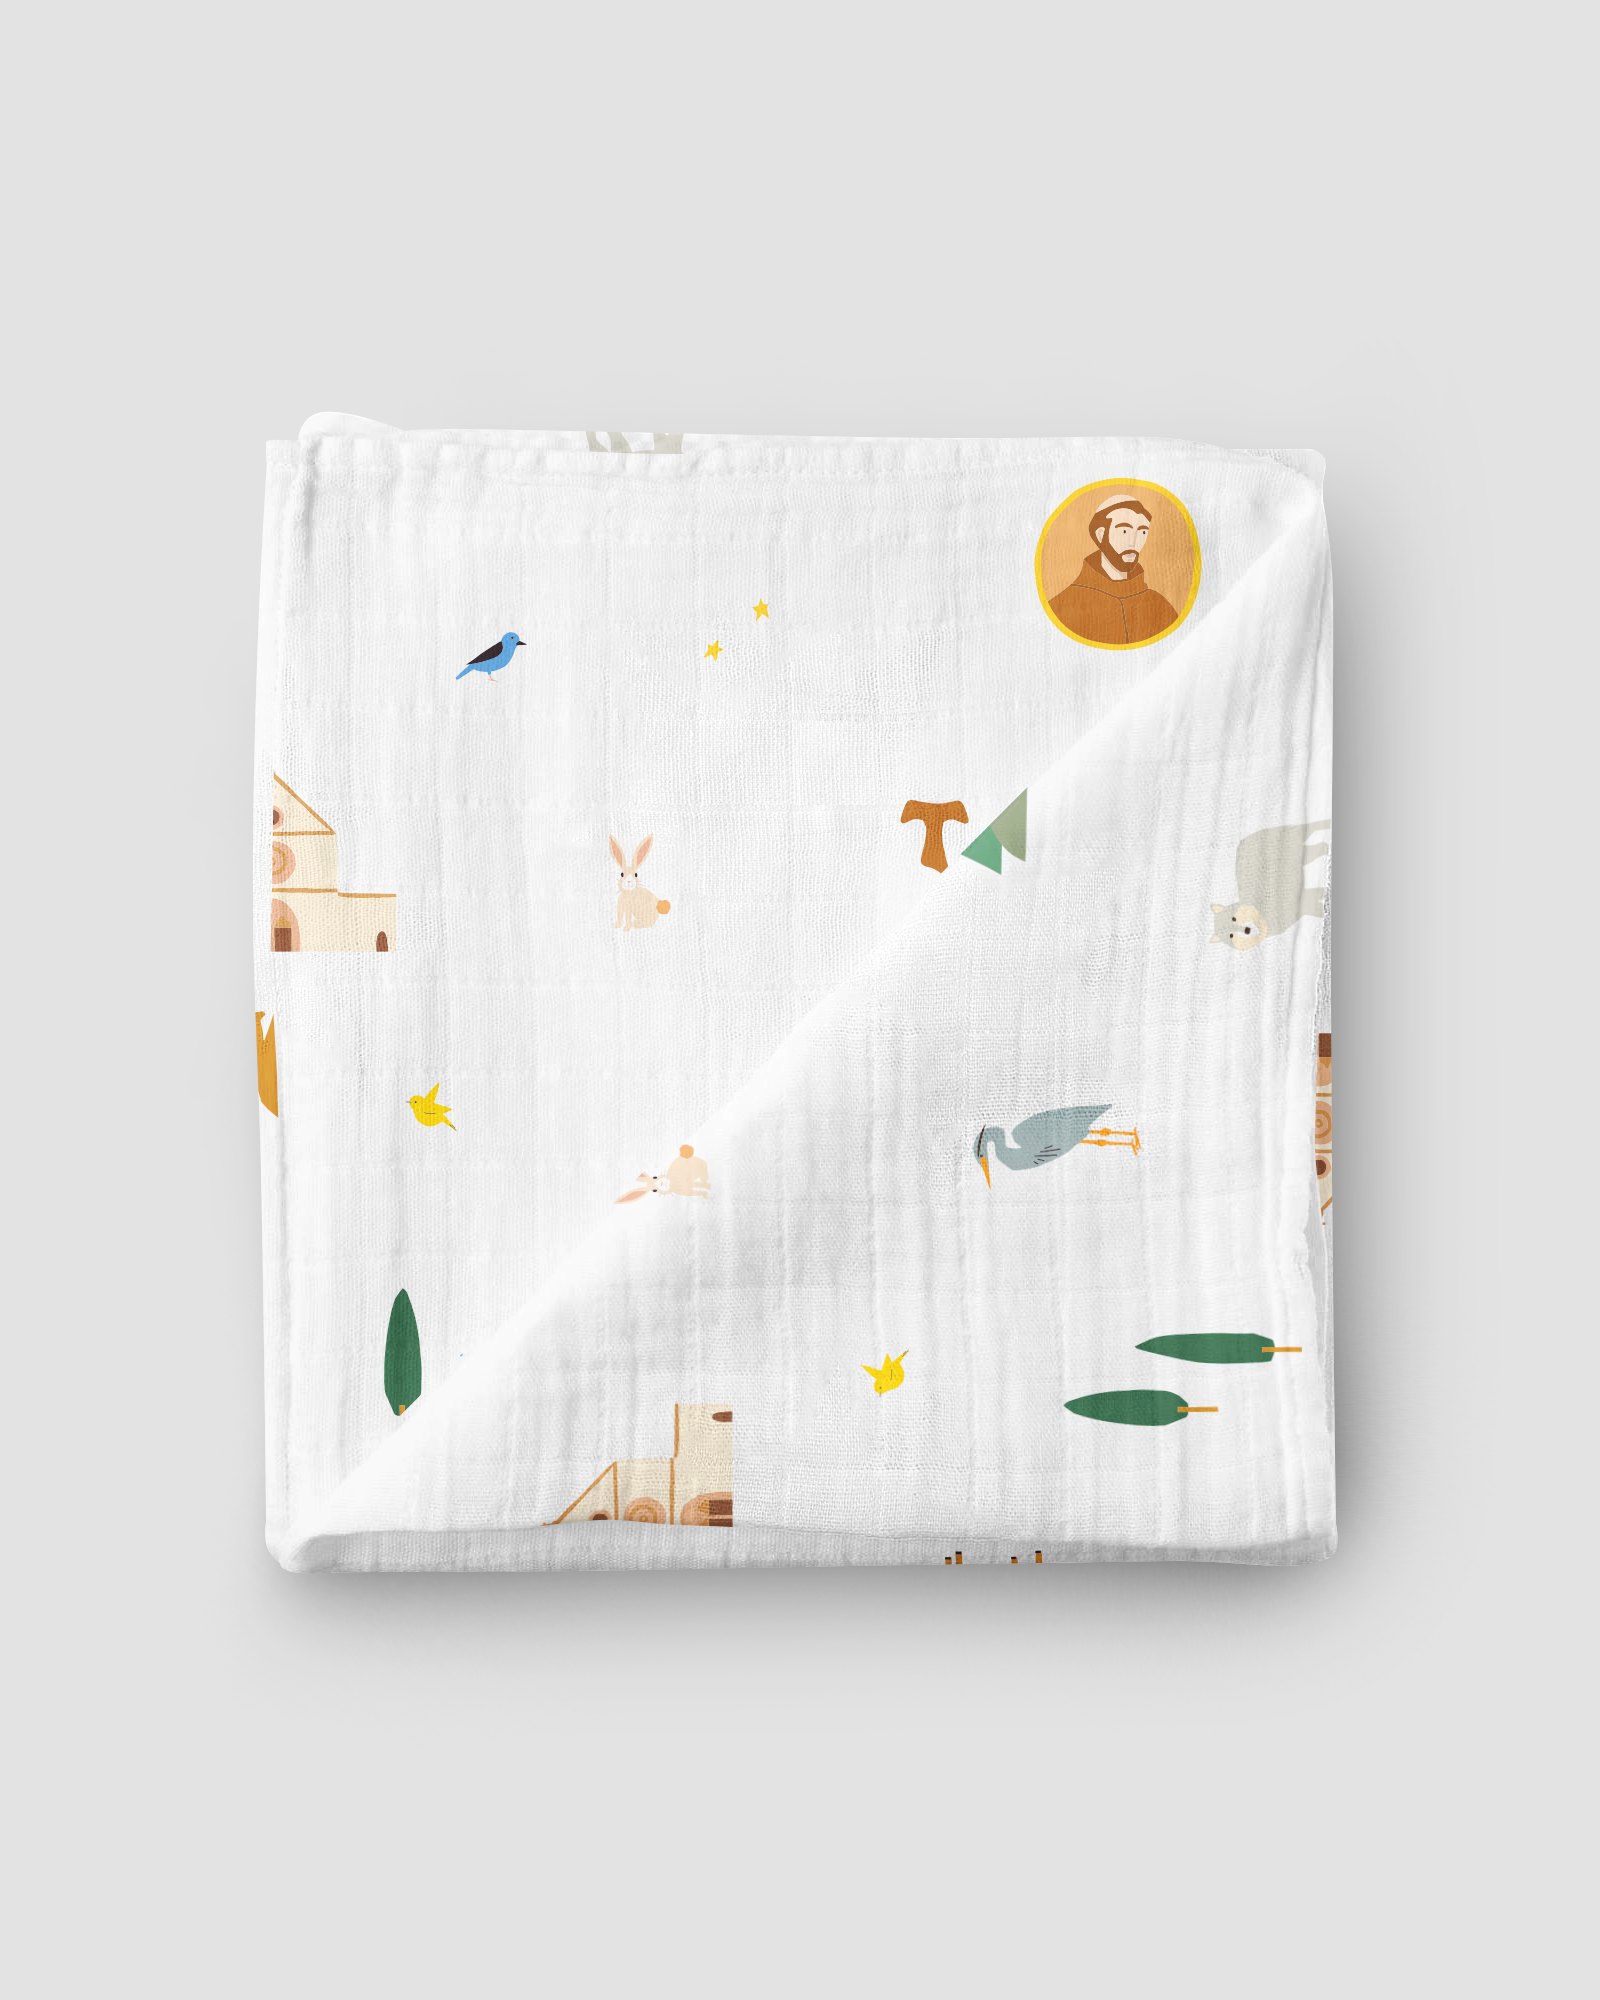 Silk Velvet Quilted Baby Blanket – Bella Notte Linens